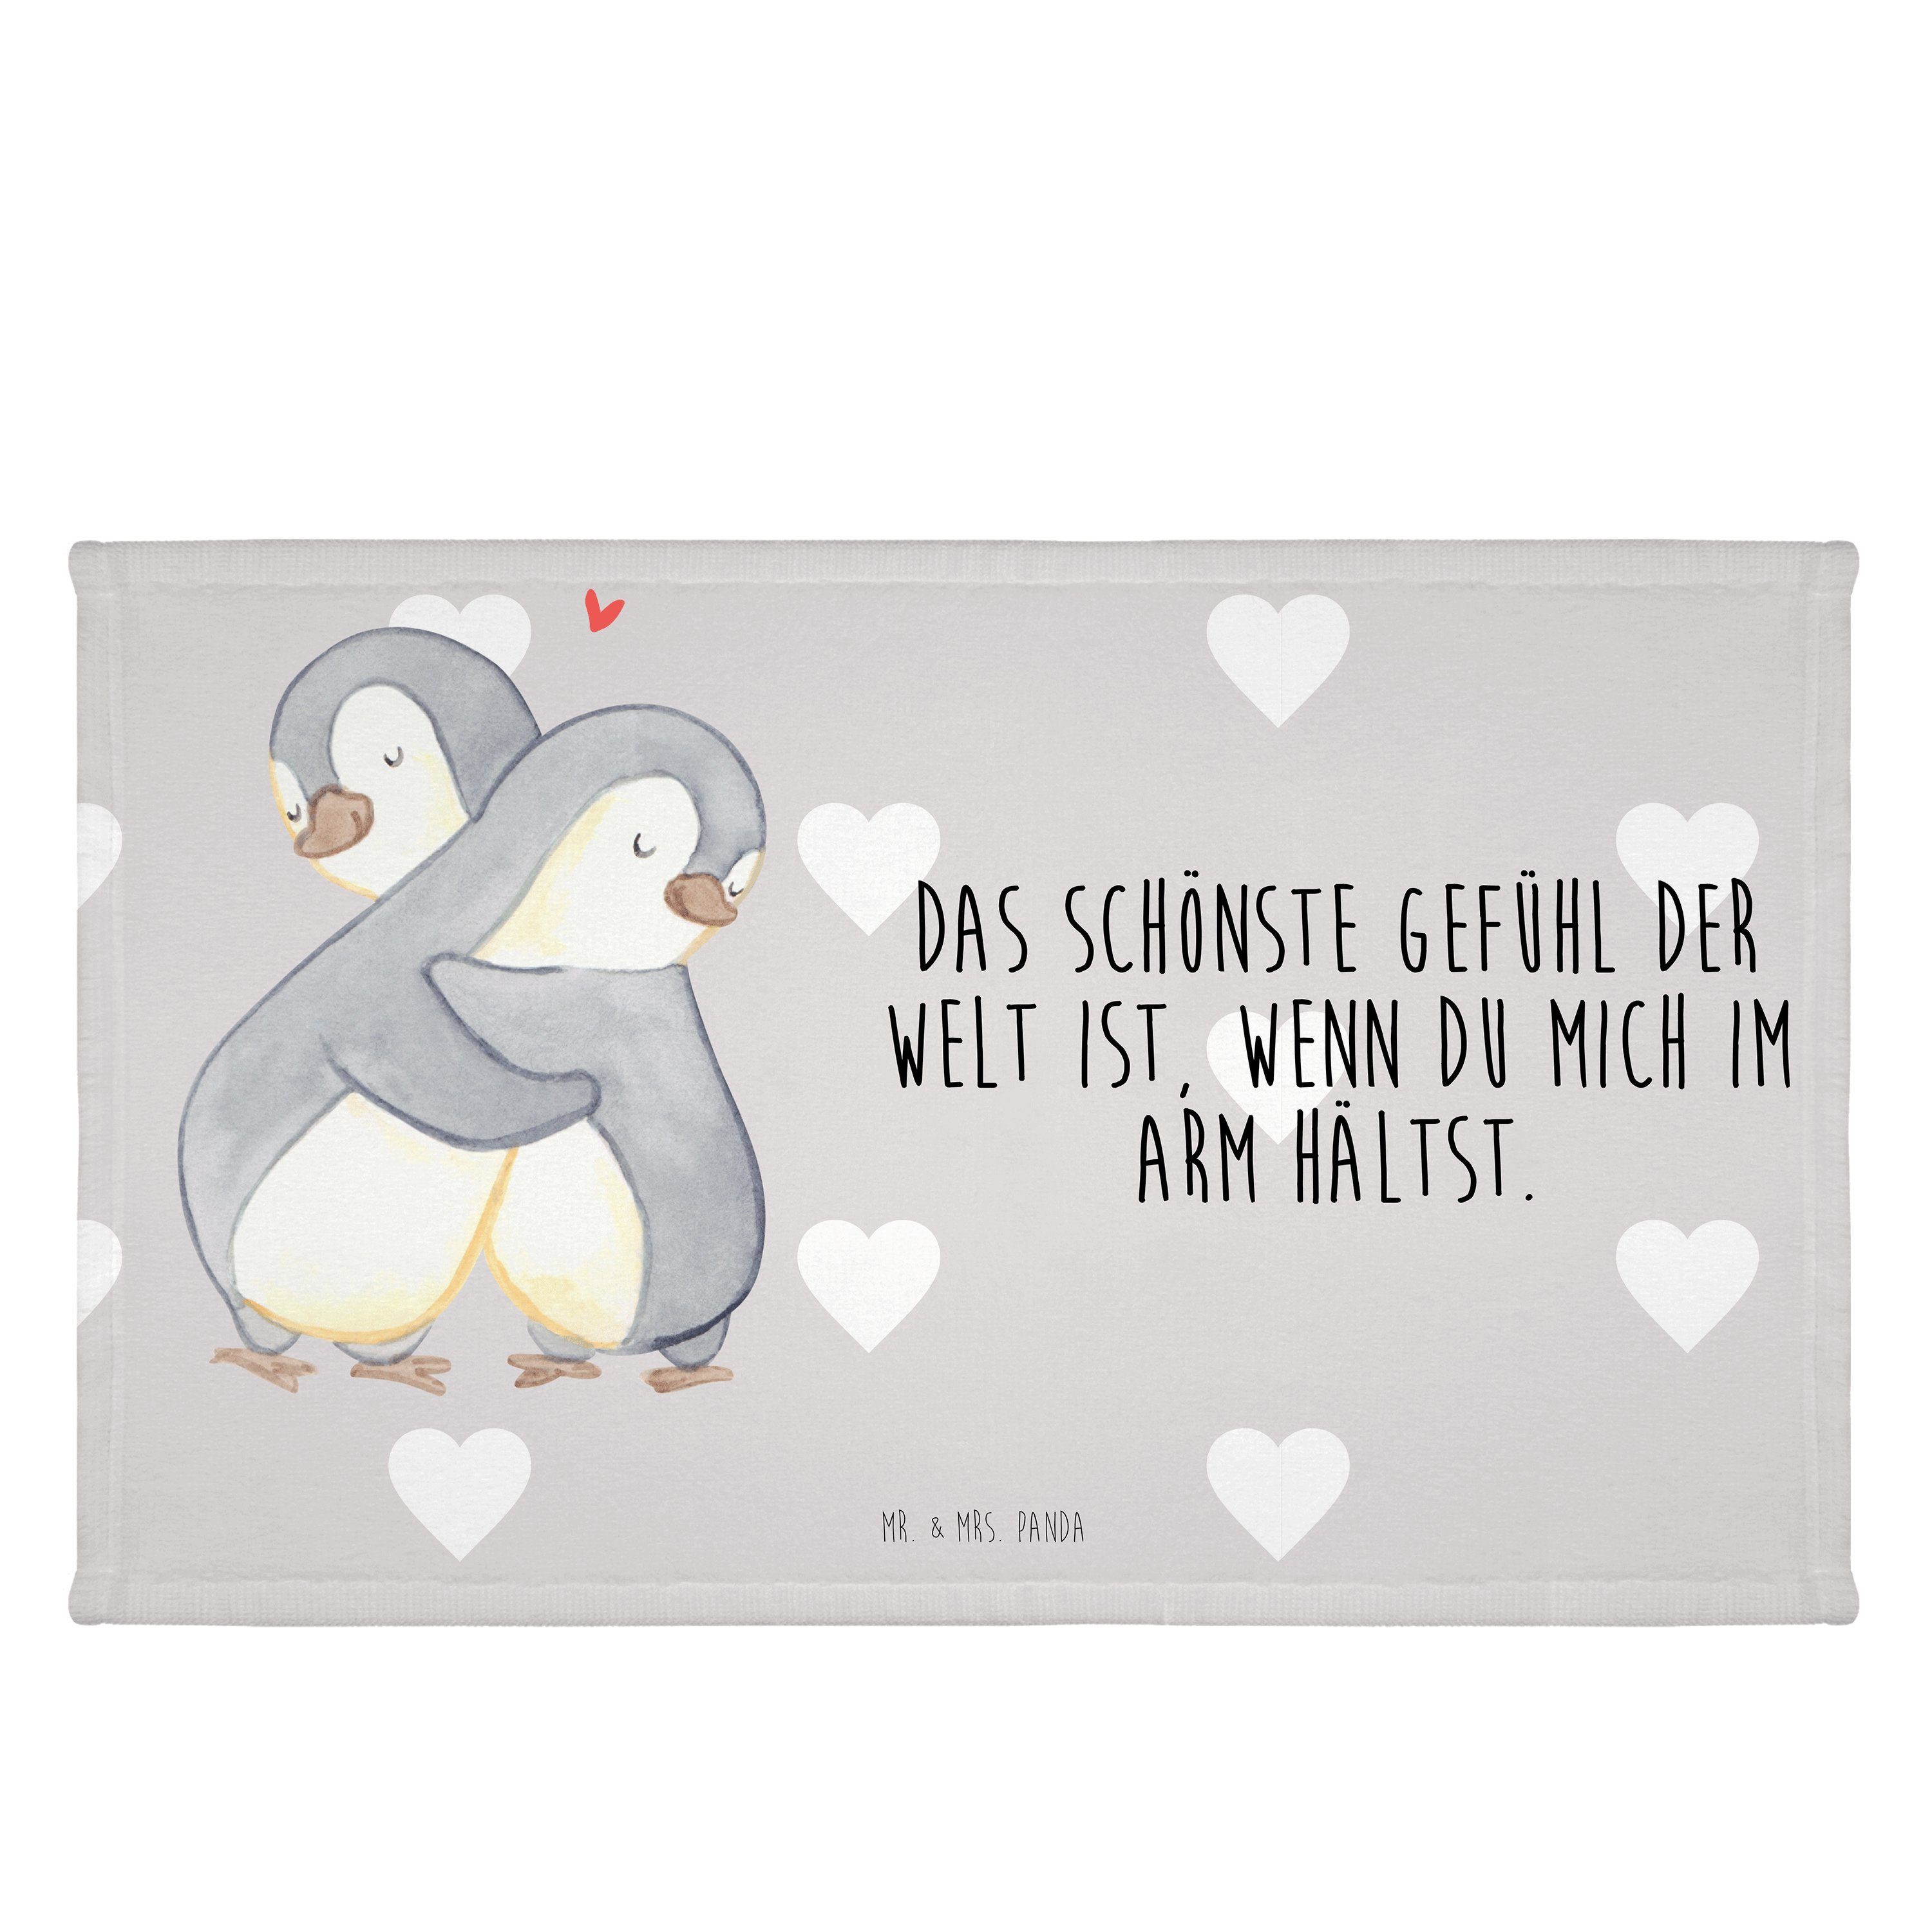 Mr. & Mrs. Panda Handtuch Pinguine Kuscheln - Grau Pastell - Geschenk, Freund, Gästetuch, Reise, (1-St)